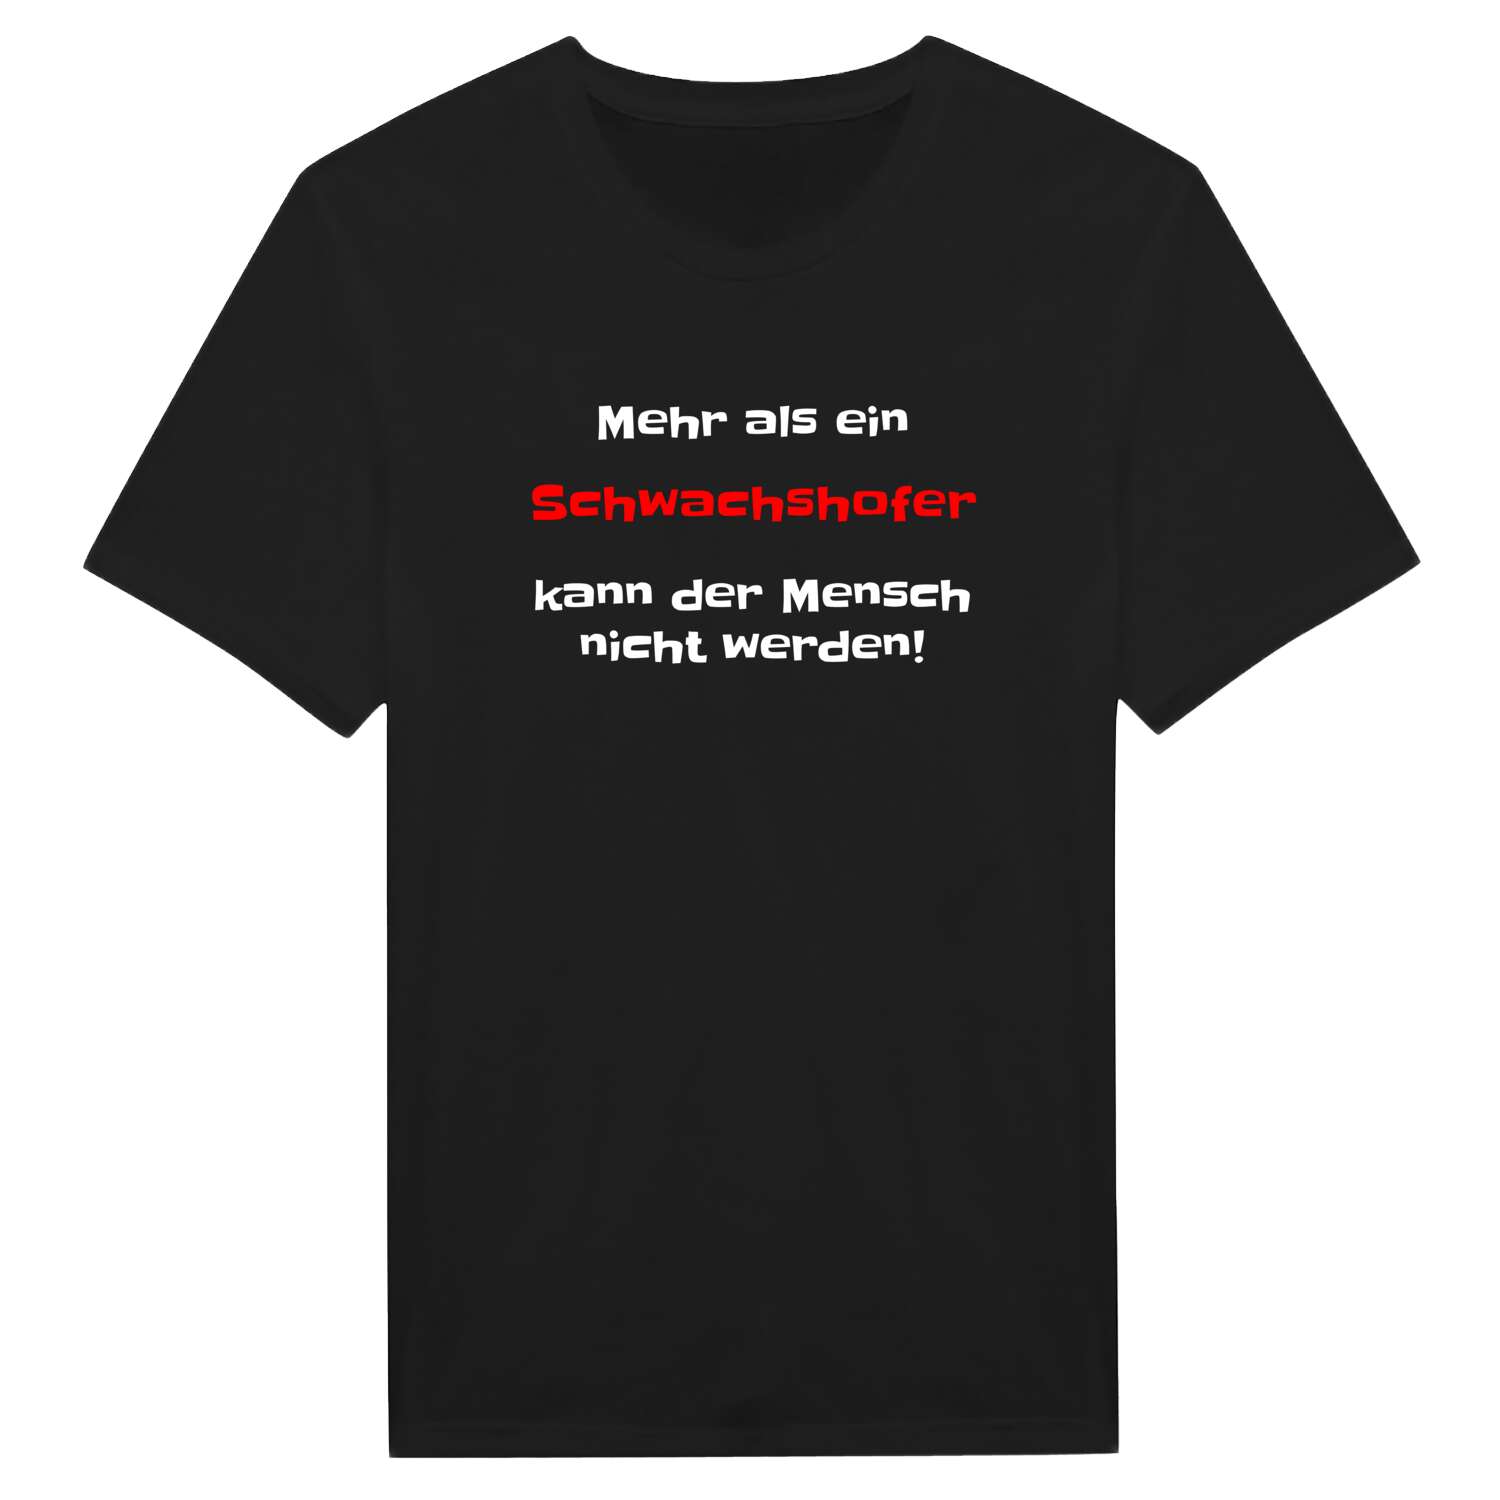 Schwachshof T-Shirt »Mehr als ein«